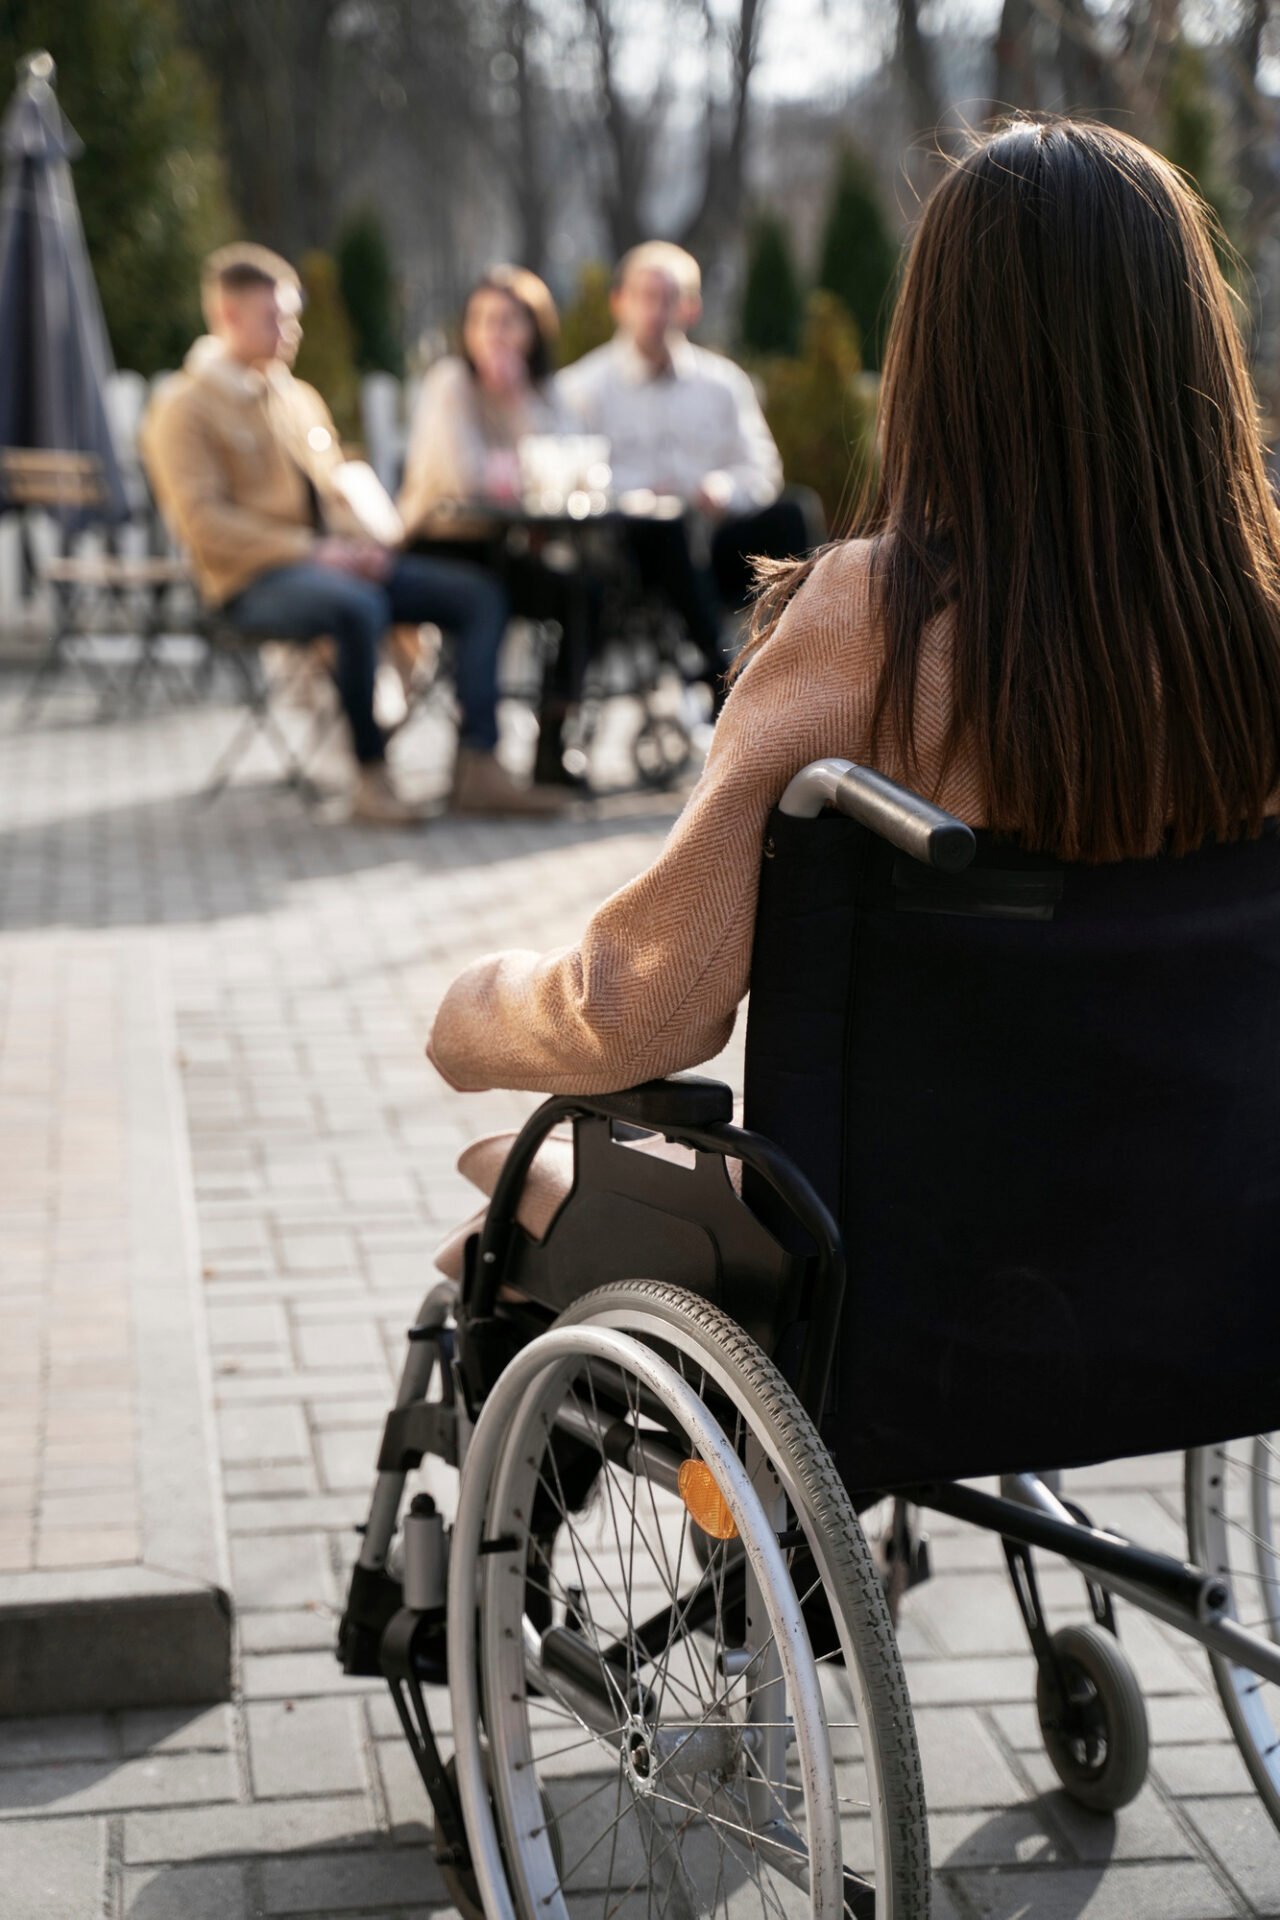 Accessibilité handicap